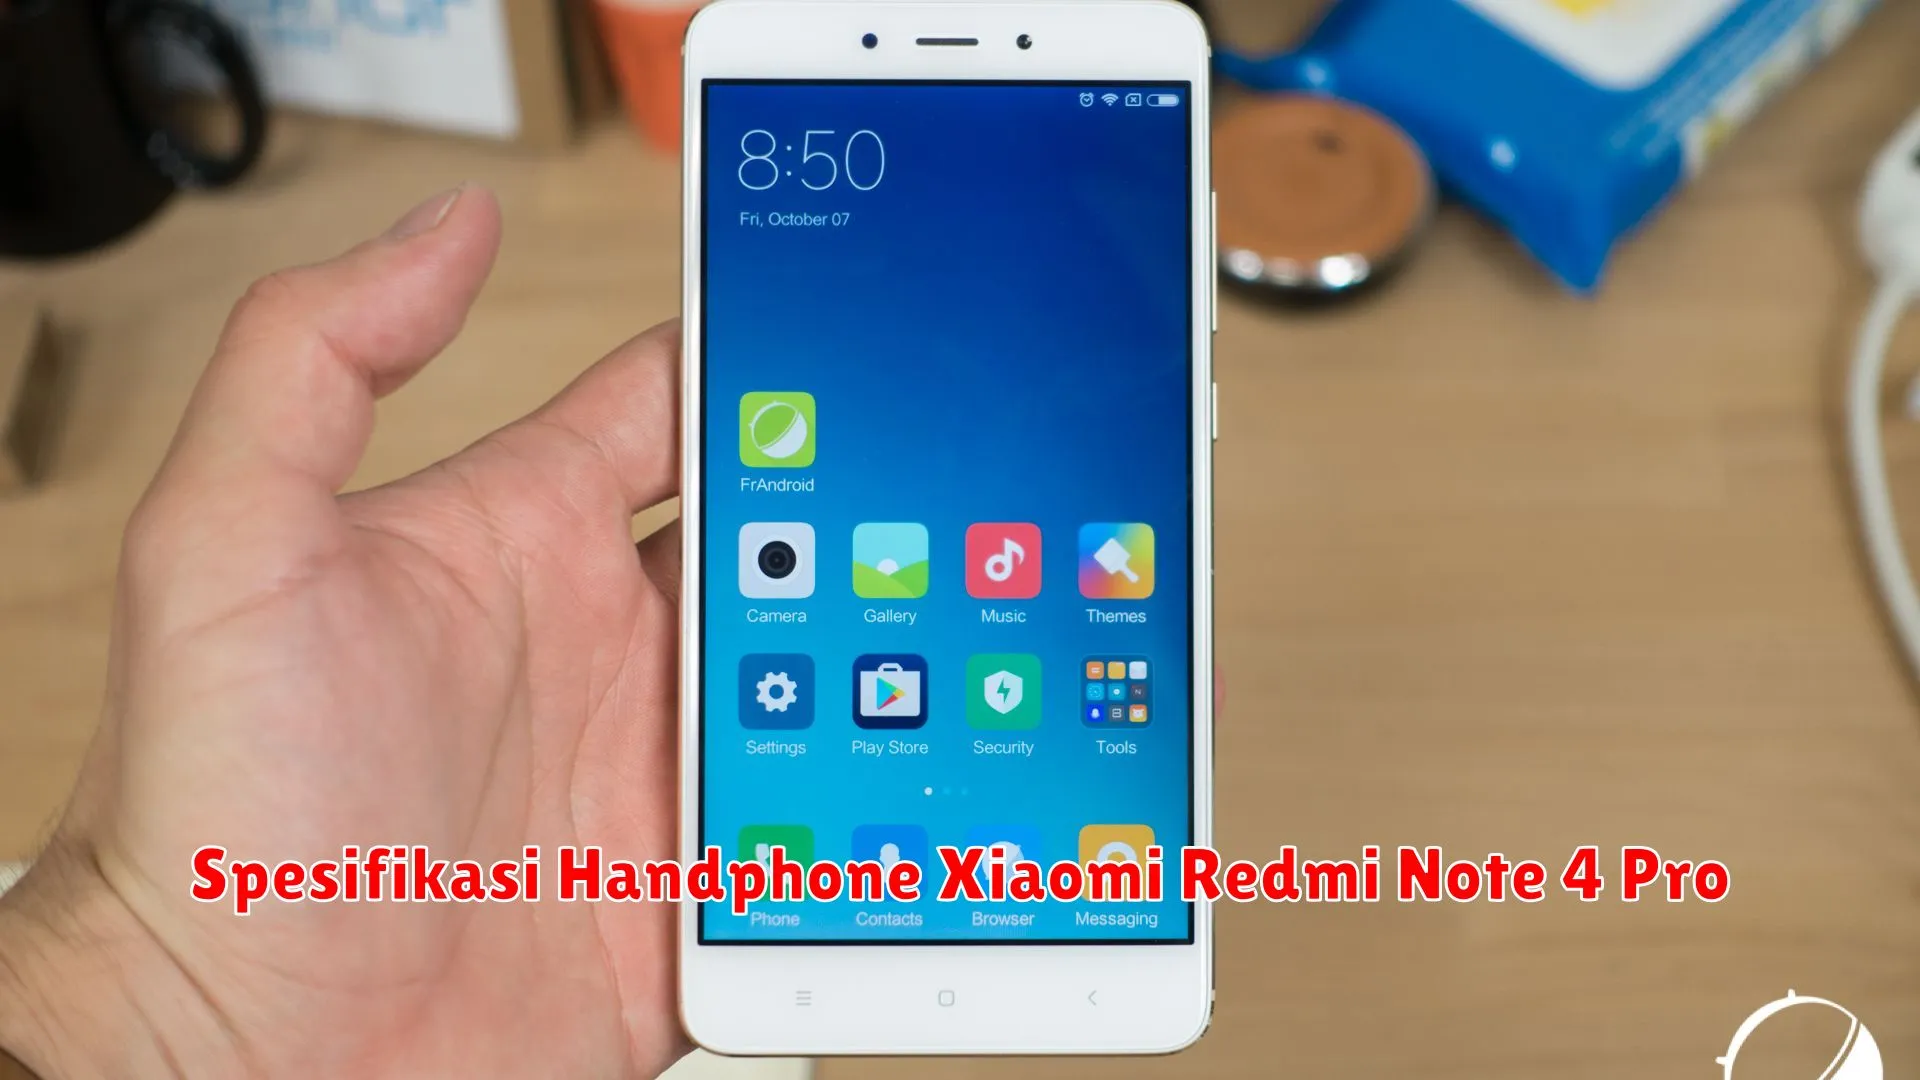 Spesifikasi Handphone Xiaomi Redmi Note 4 Pro